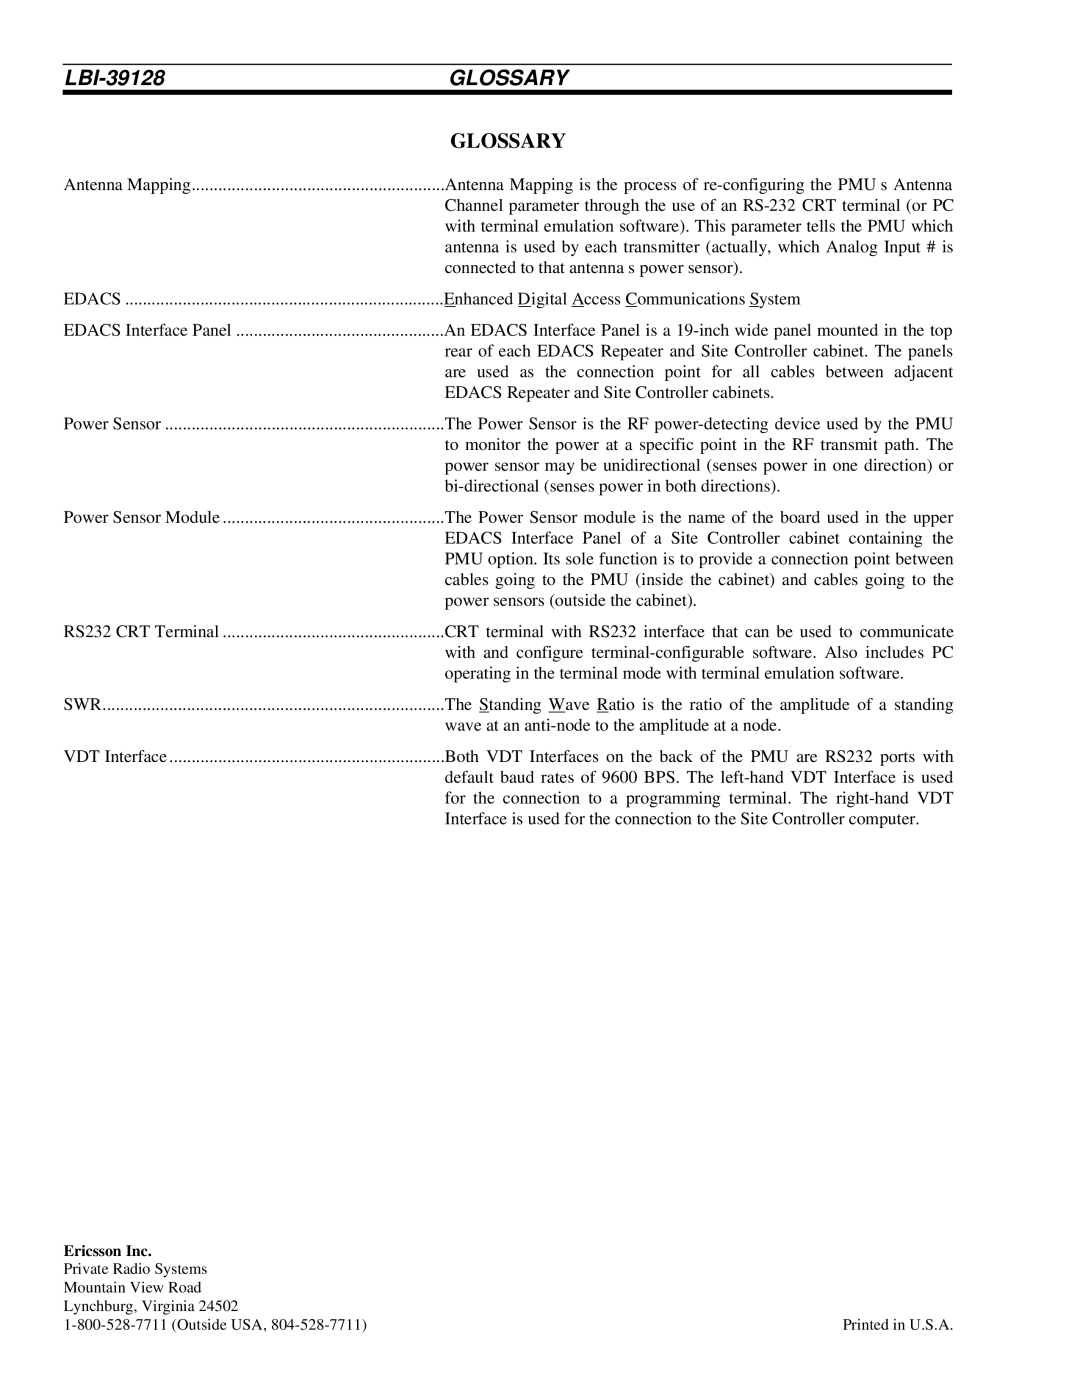 Ericsson LBI-39128 manual Glossary 